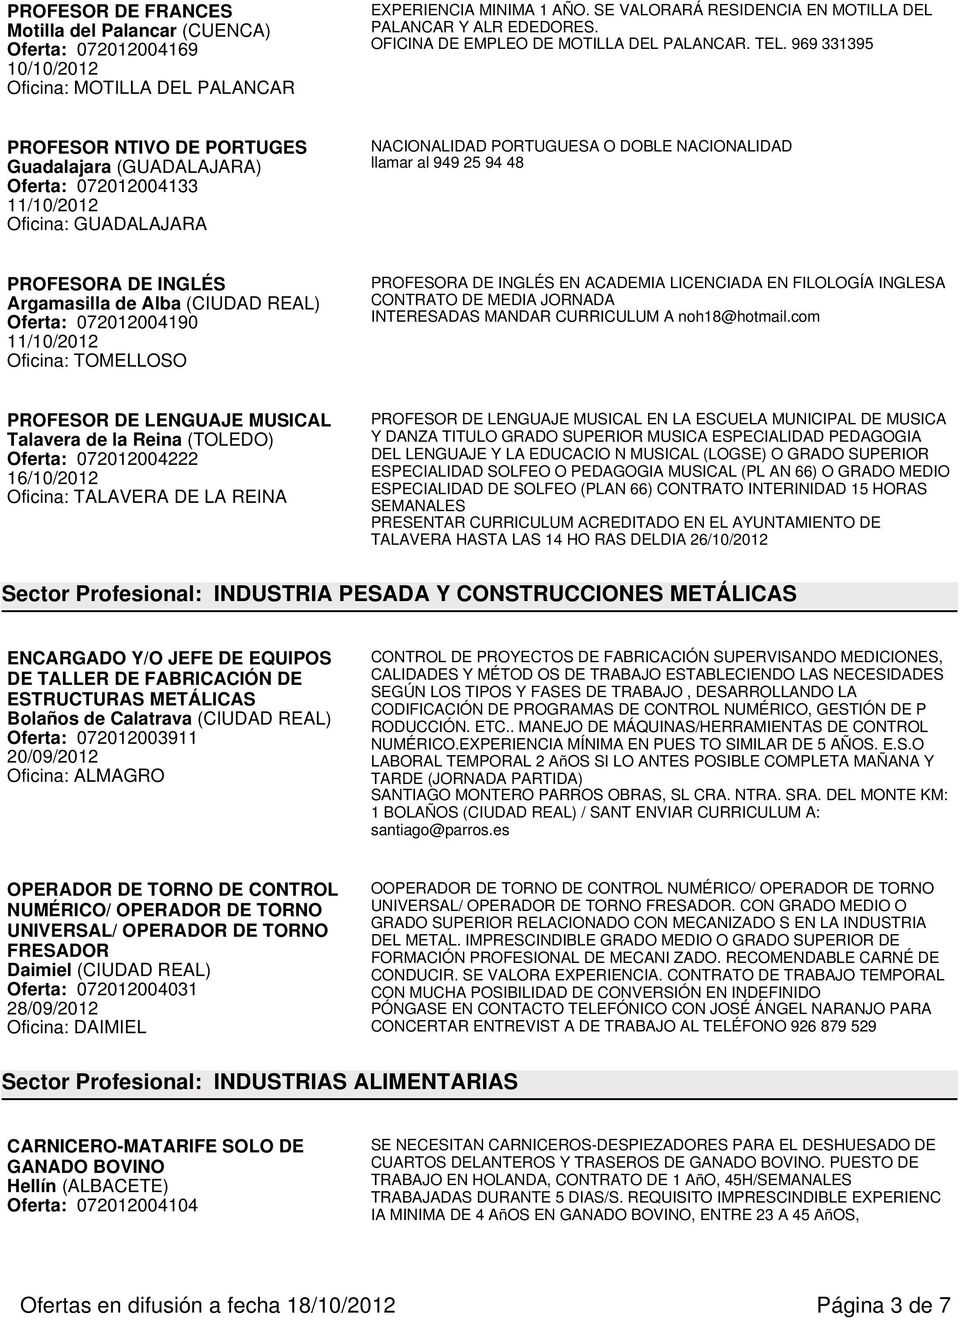 969 331395 PROFESOR NTIVO DE PORTUGES Guadalajara (GUADALAJARA) Oferta: 072012004133 11/10/2012 Oficina: GUADALAJARA NACIONALIDAD PORTUGUESA O DOBLE NACIONALIDAD llamar al 949 25 94 48 PROFESORA DE